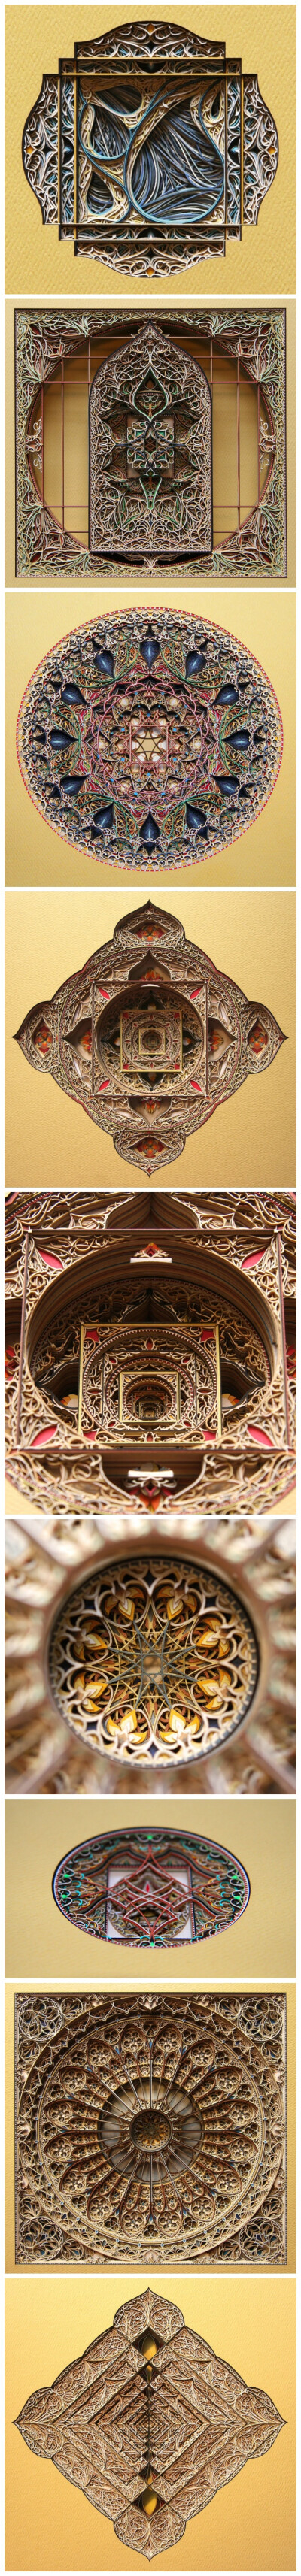 异常华丽繁复的激光切割厚纸堆叠 来自美国弗吉尼亚州的艺术家 Eric Standley，灵感来自于哥特式和伊斯兰建筑装饰中的几何形状 （eric-standley.com）